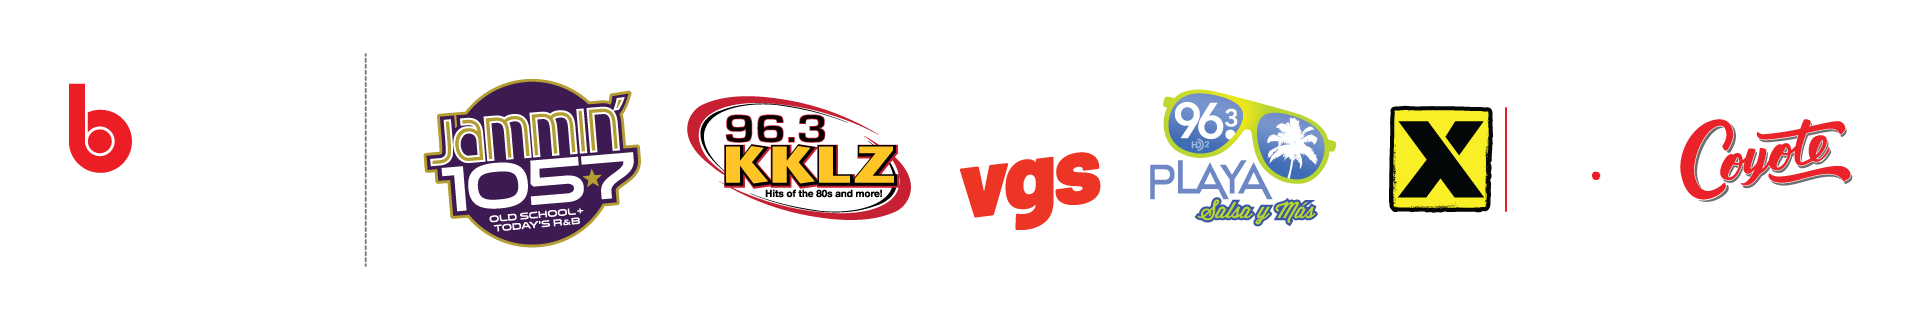 vegas station site logos